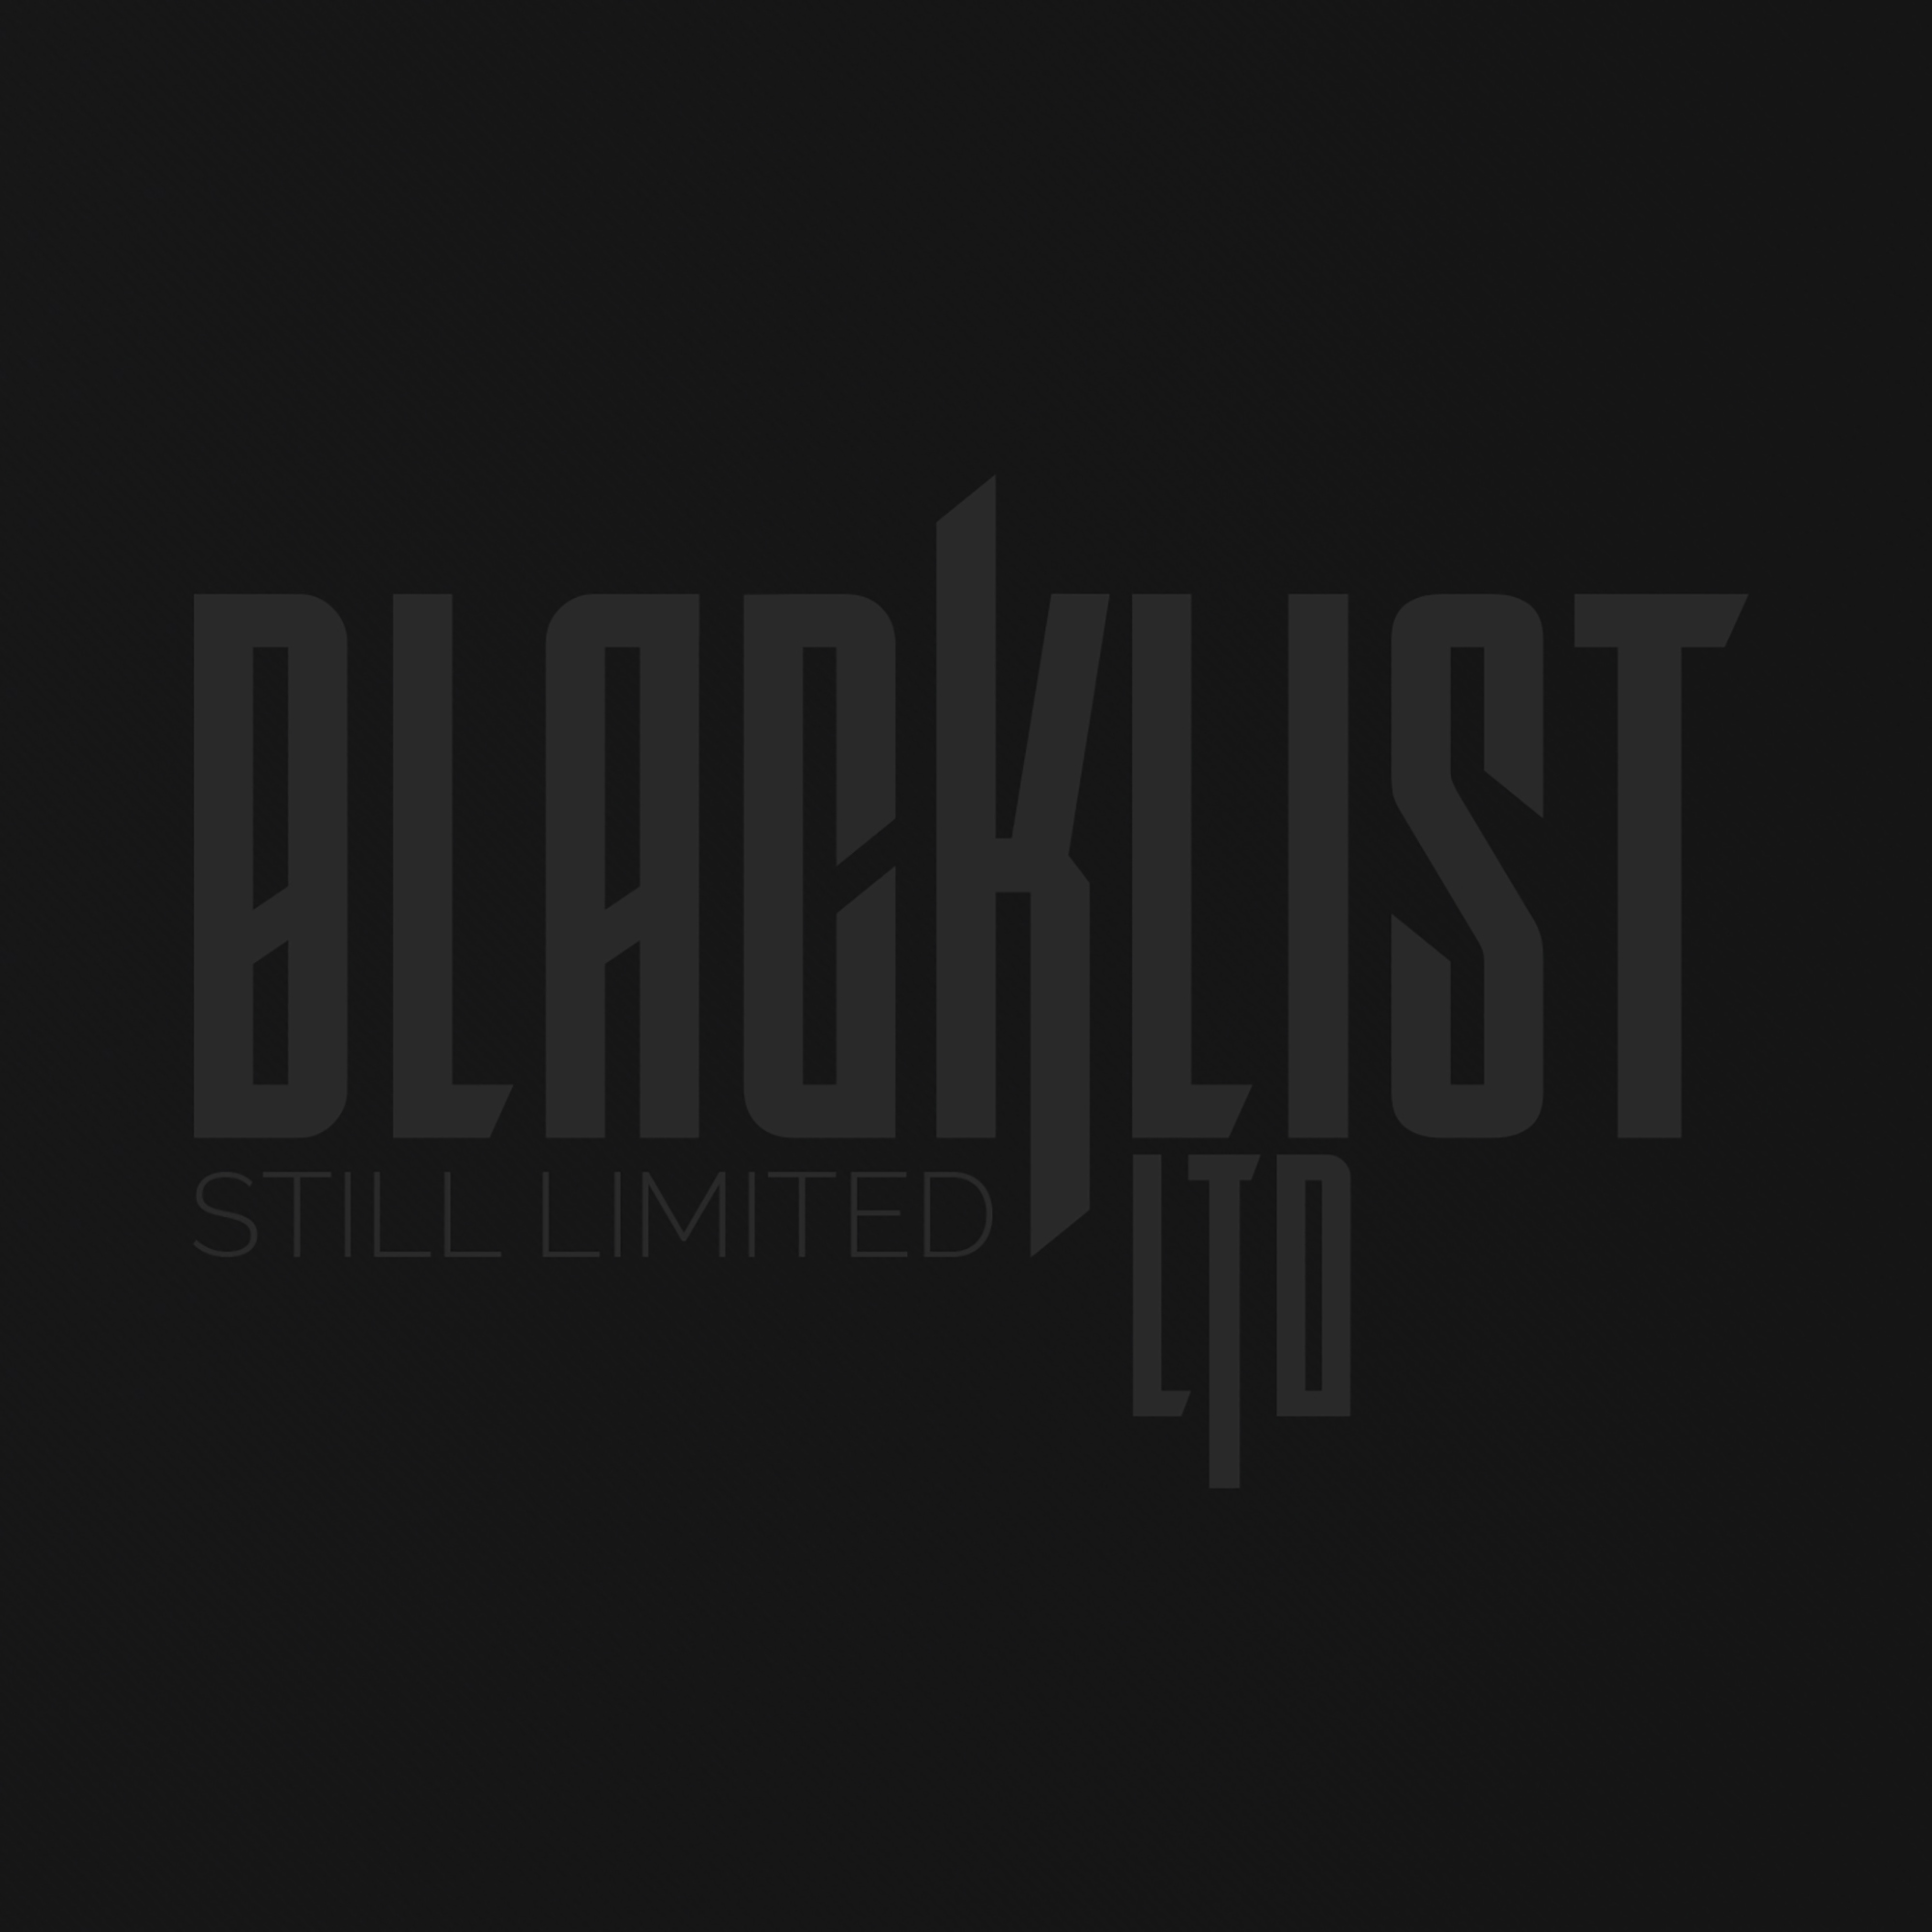 BLACKLIST LTD (DE) – Still Limited